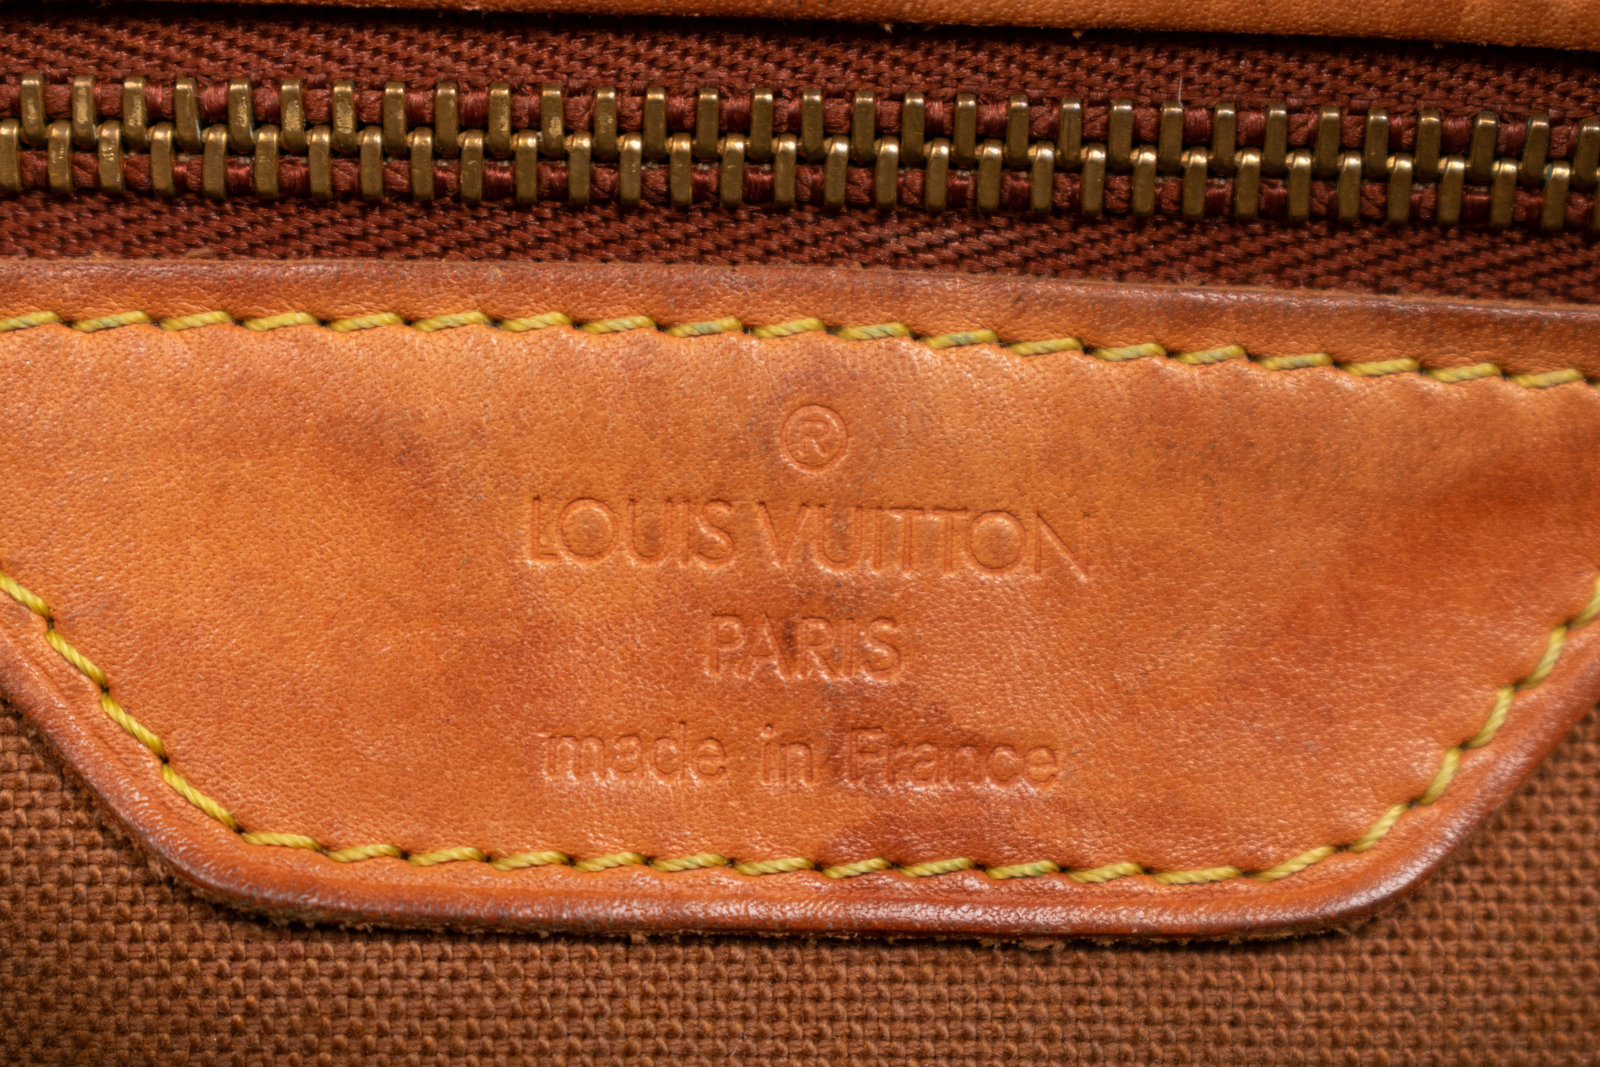 Louis Vuitton Limited Edition Centenaire Damier Canvas Chelsea Bag -  Yoogi's Closet